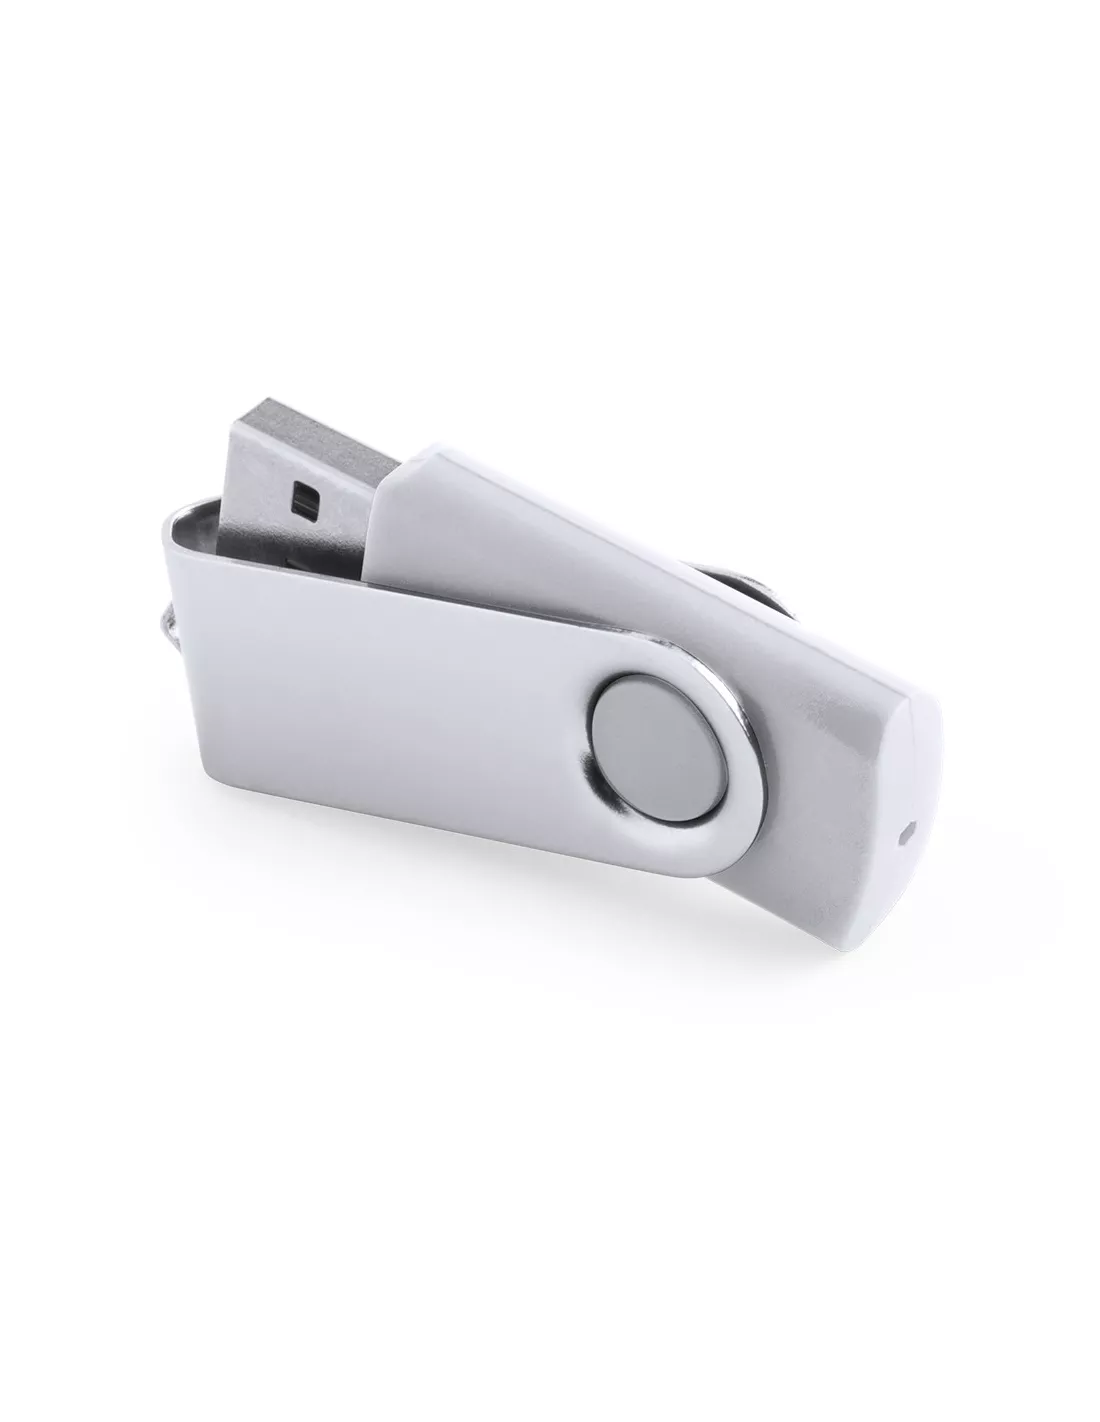 Pendrive personalizable con clip de aluminio 16GB Rebik (Gris-plata) (Memoria USB)